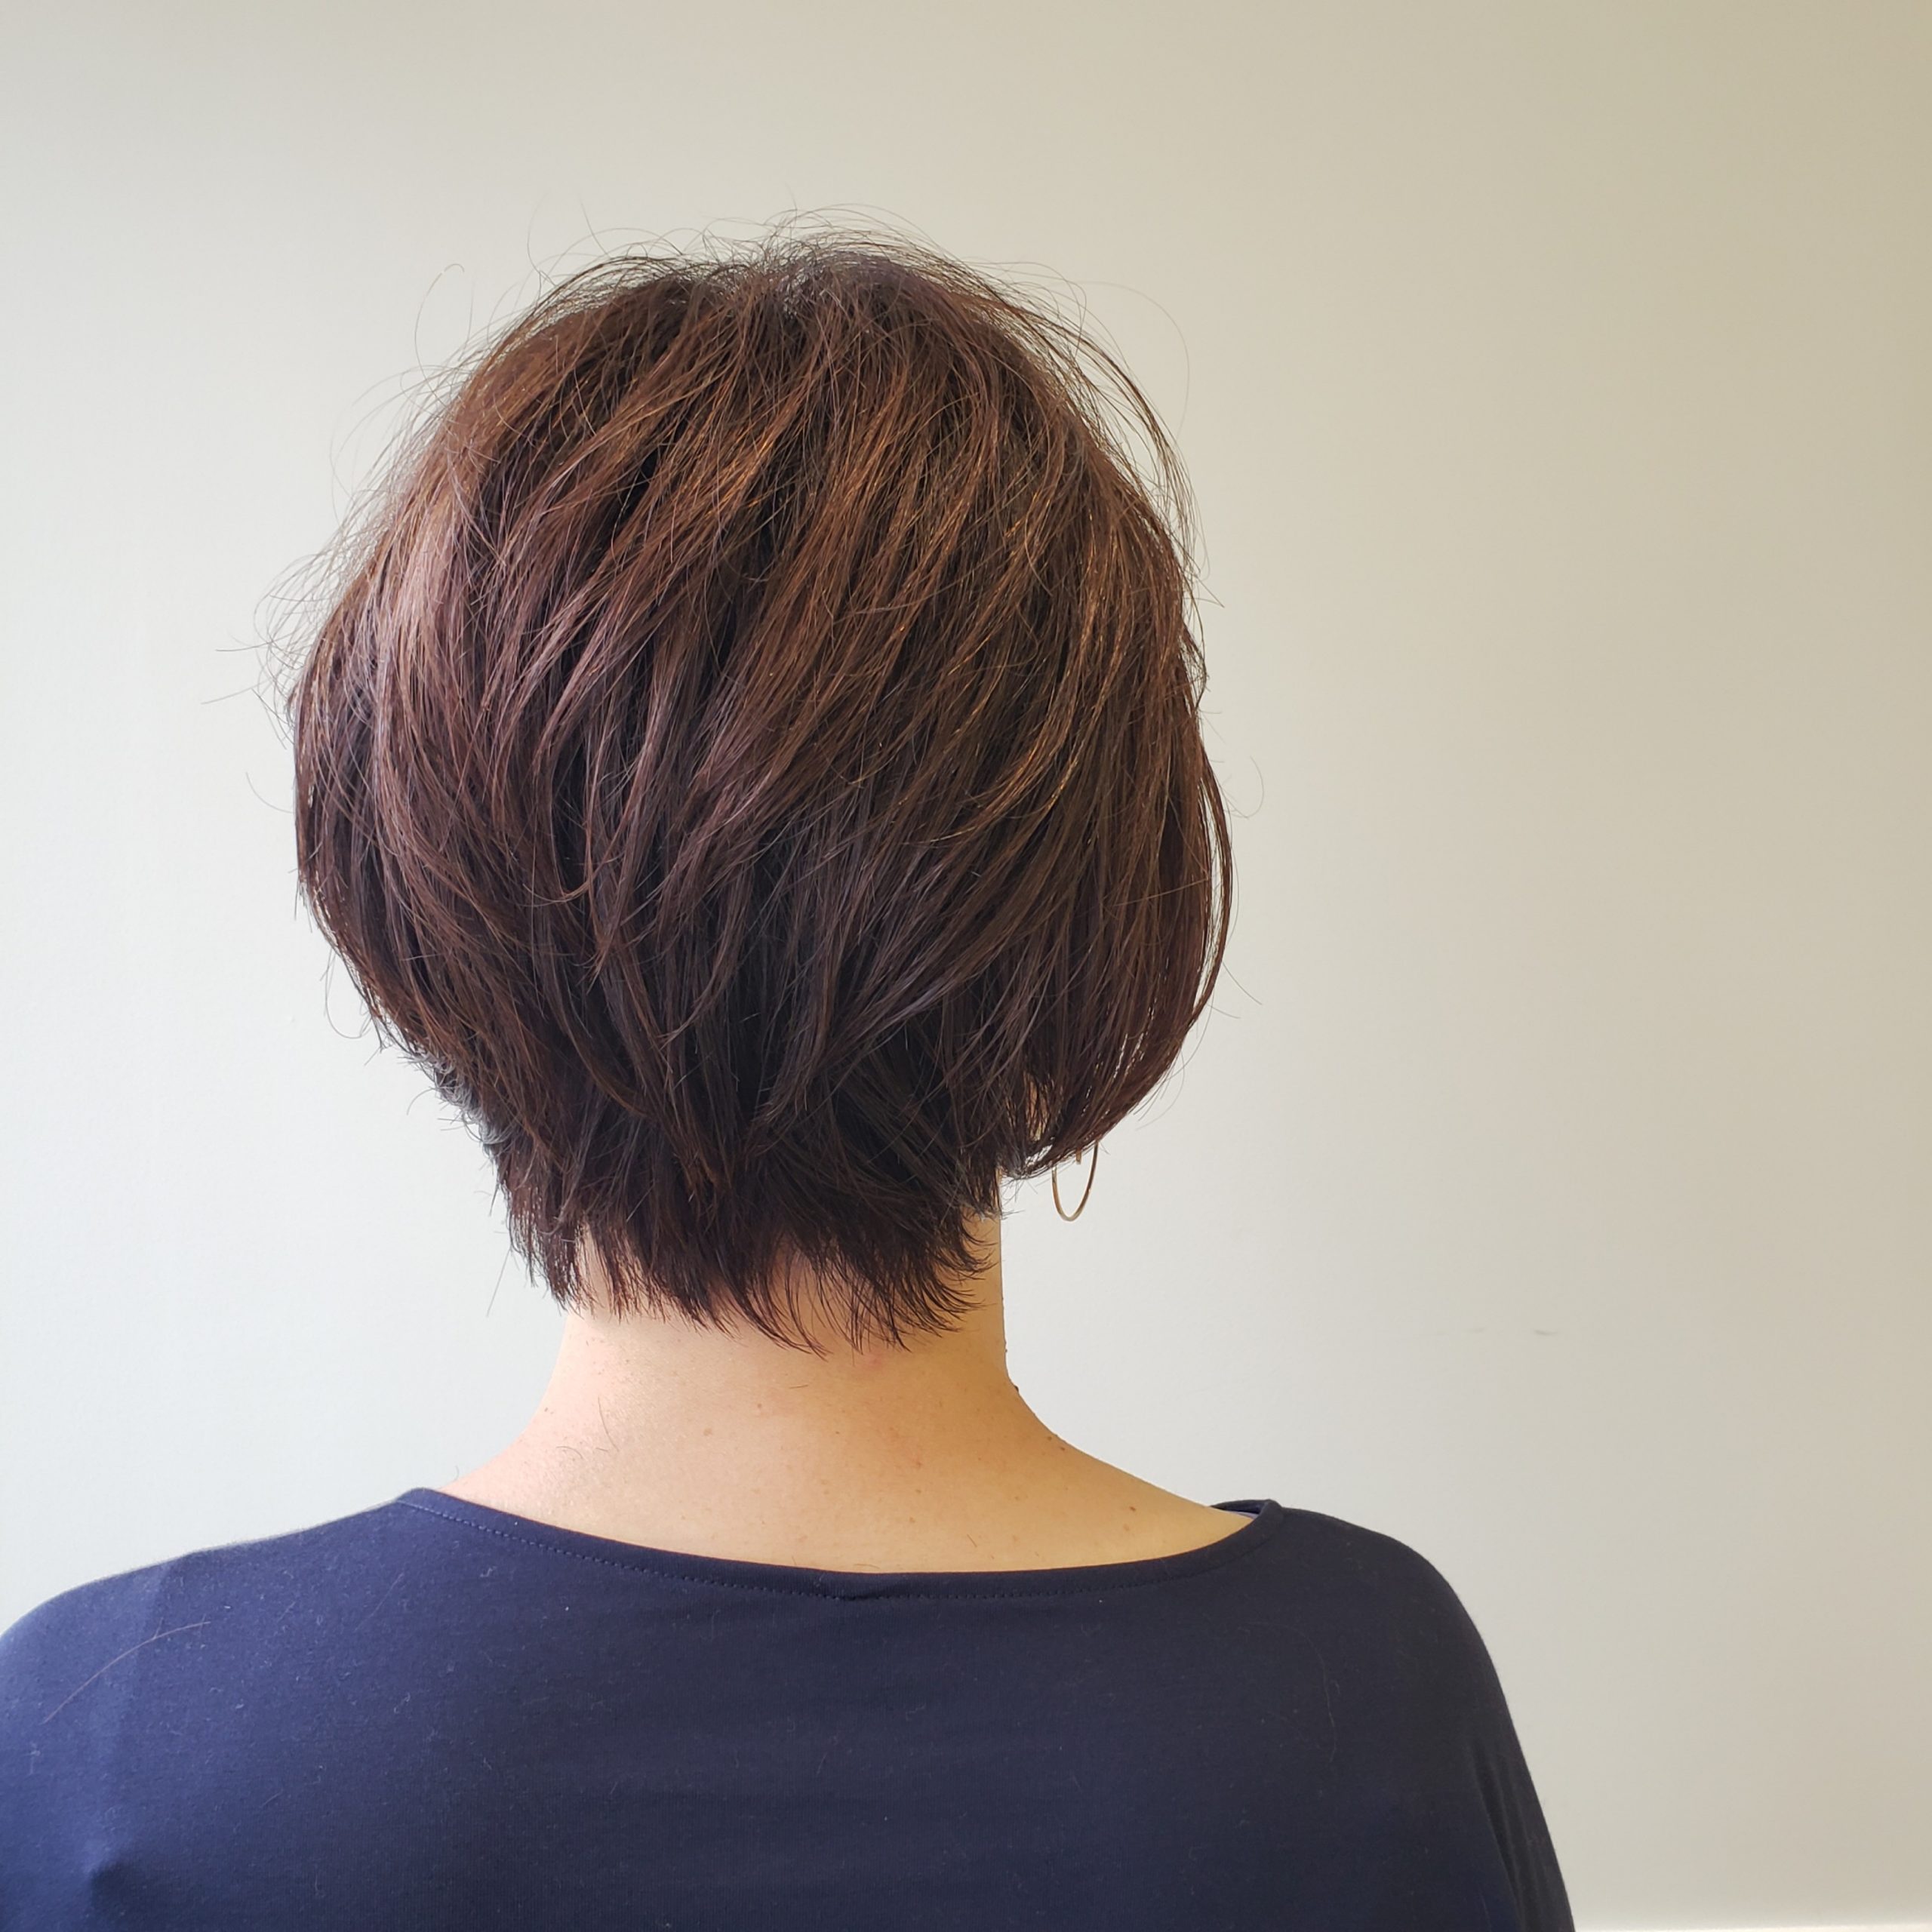 【くせ毛の方必見】くせ毛を生かした40代のショートヘアの作り方とは？ 横浜の美容室 加藤隆史(カトウタカシ)ブログサイト